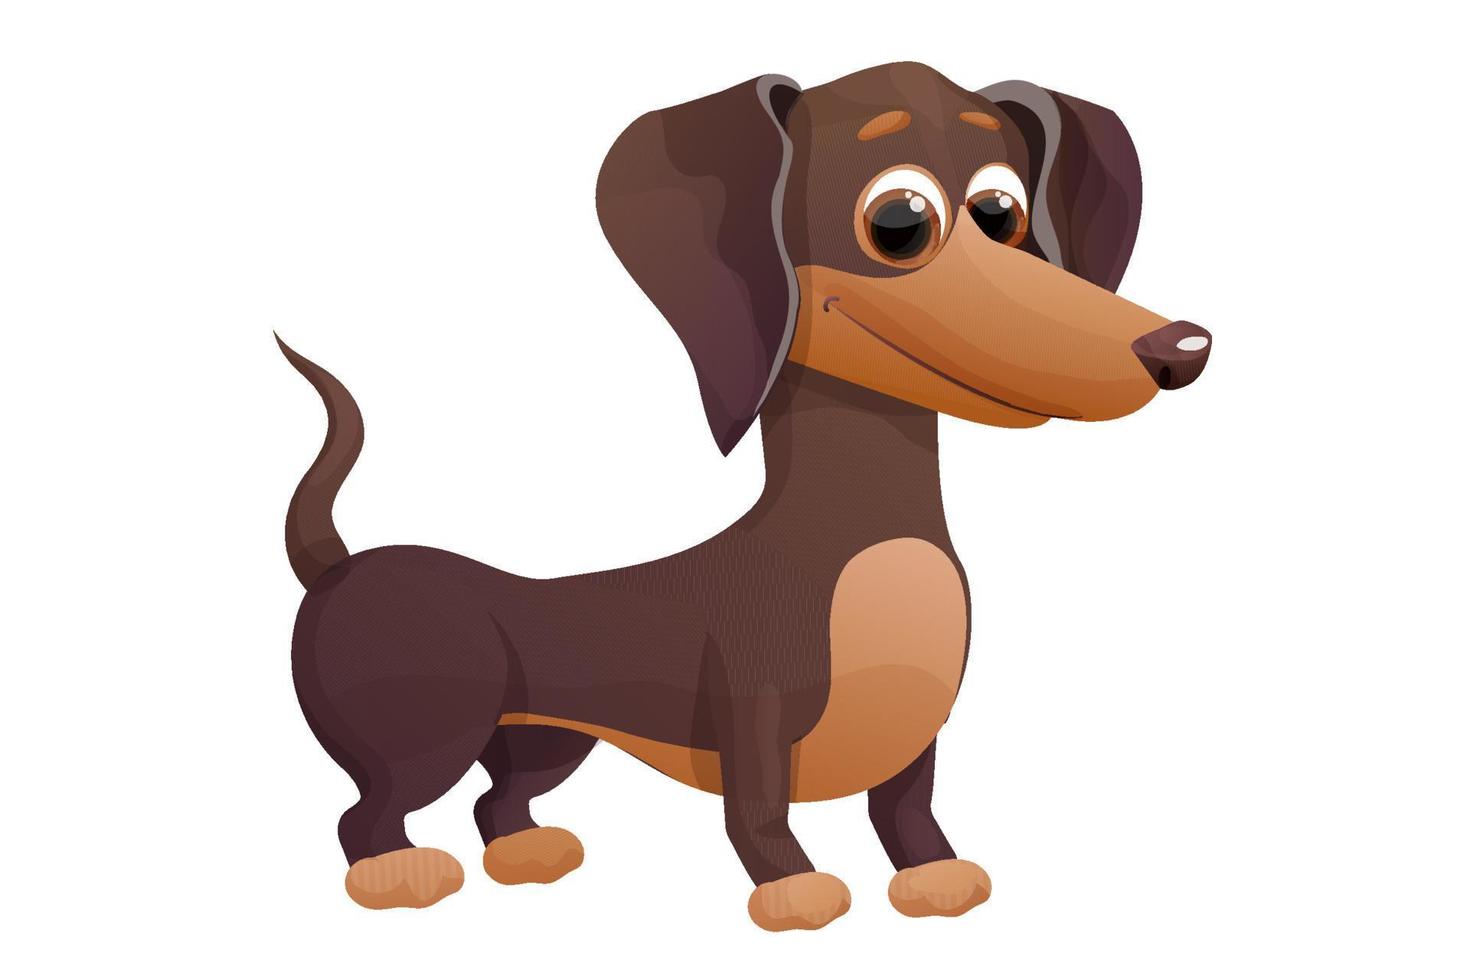 lindo cachorro dachshund, de pie y sonriendo en estilo de dibujos animados, personaje de mascota brillante aislado sobre fondo blanco. ilustración vectorial vector